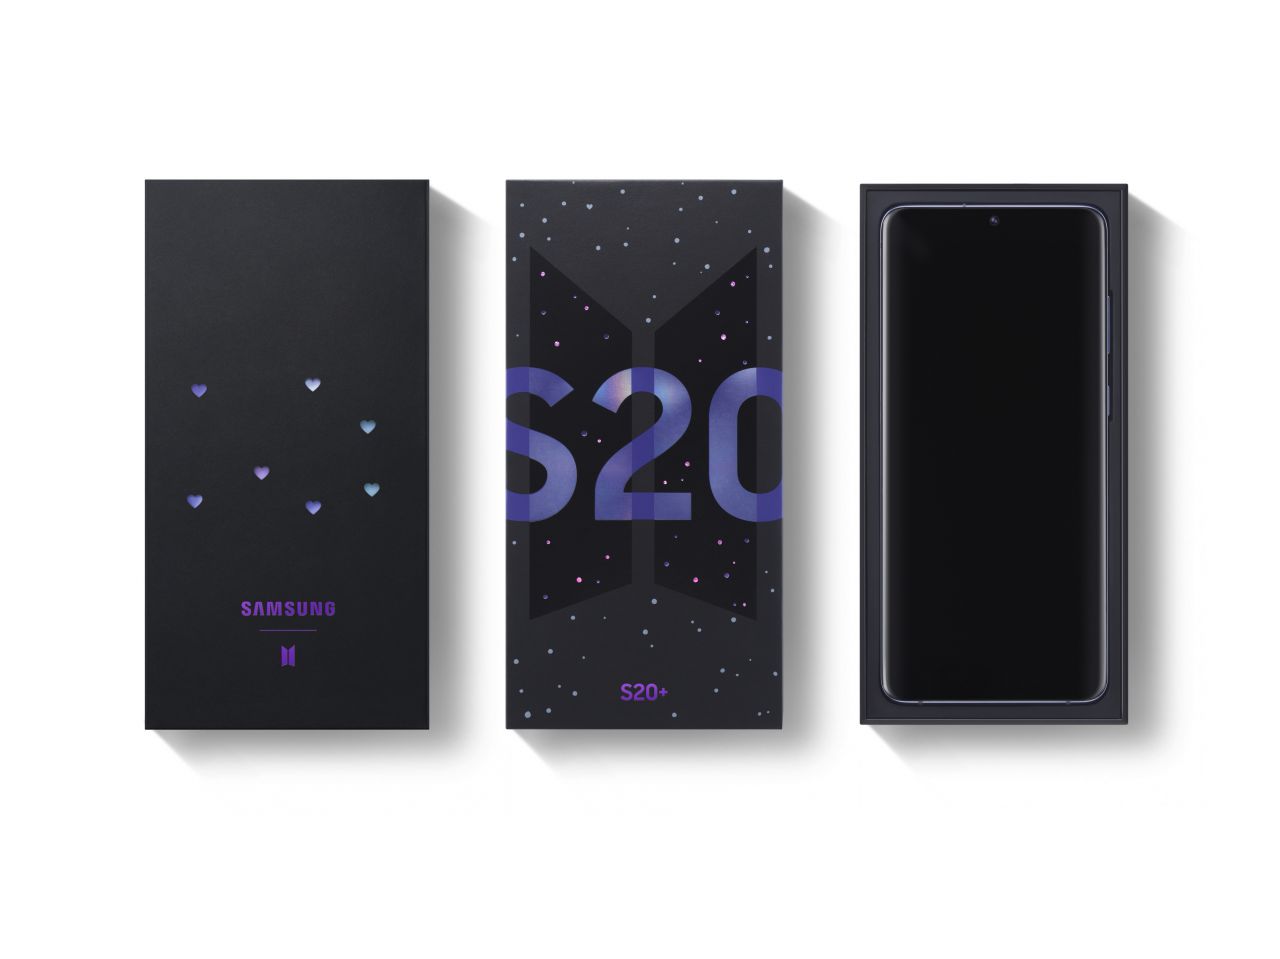 Samsung Galaxy S20+ BTS Edition 